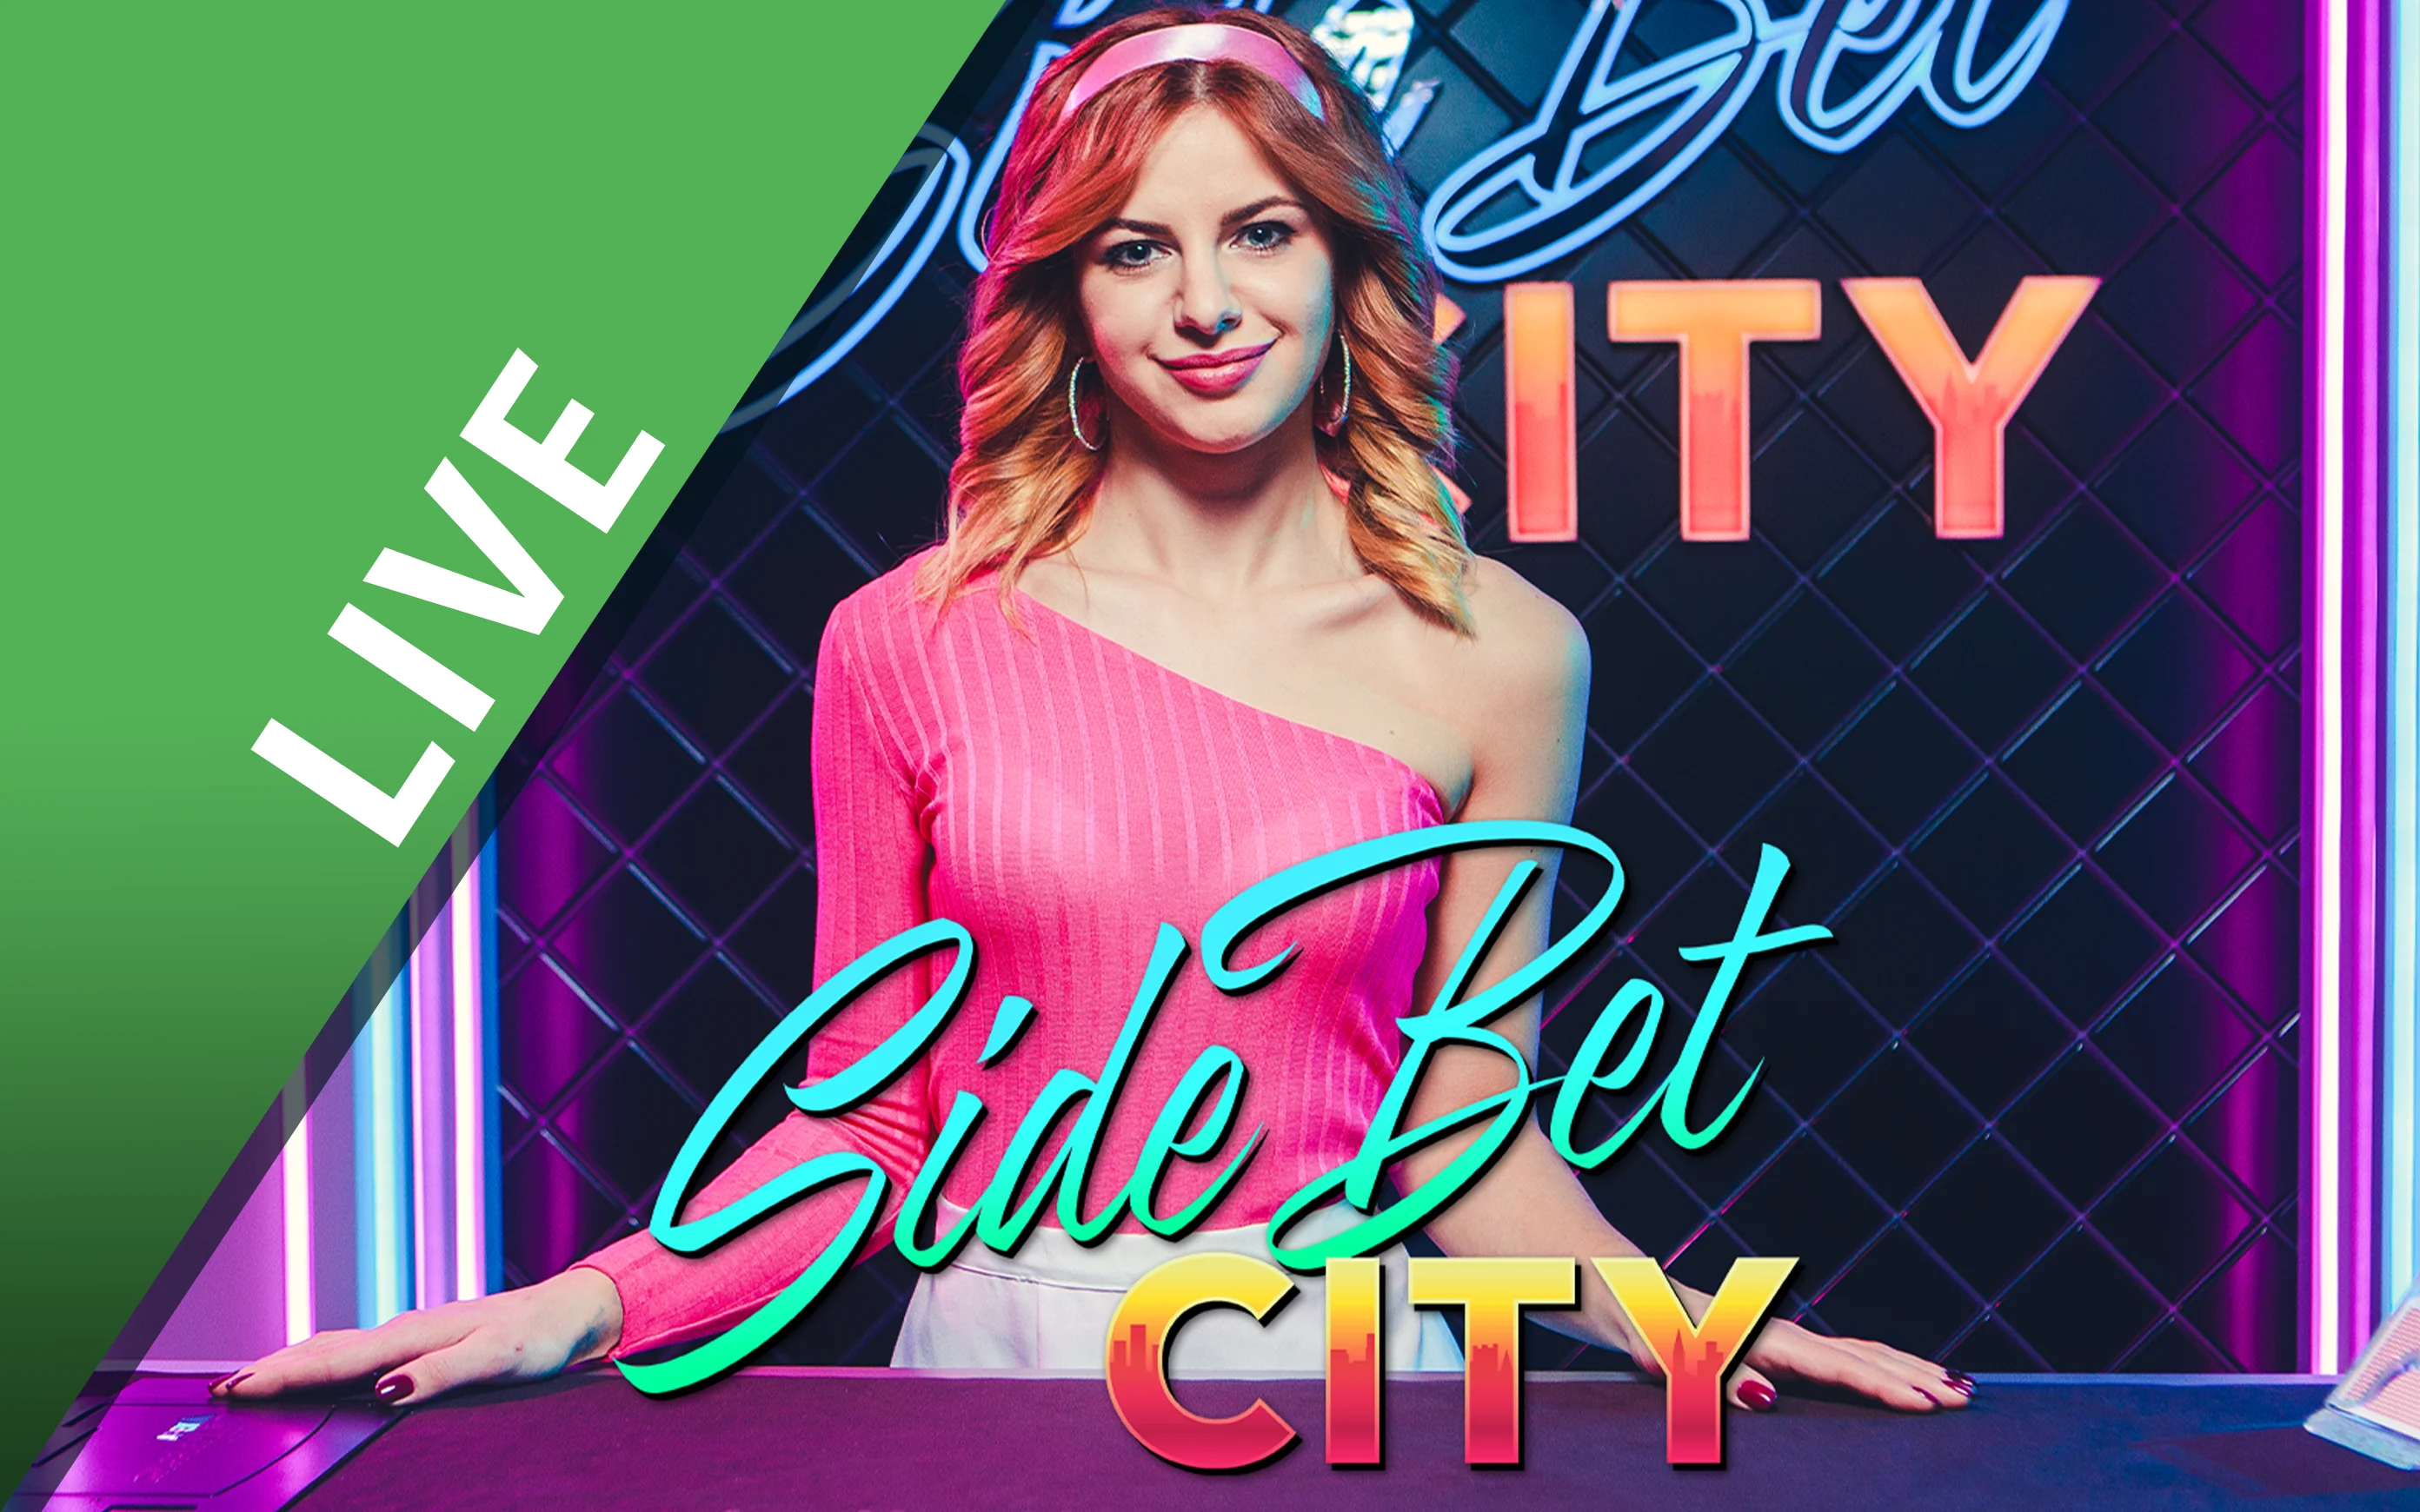 Starcasino.be online casino üzerinden Side Bet City oynayın